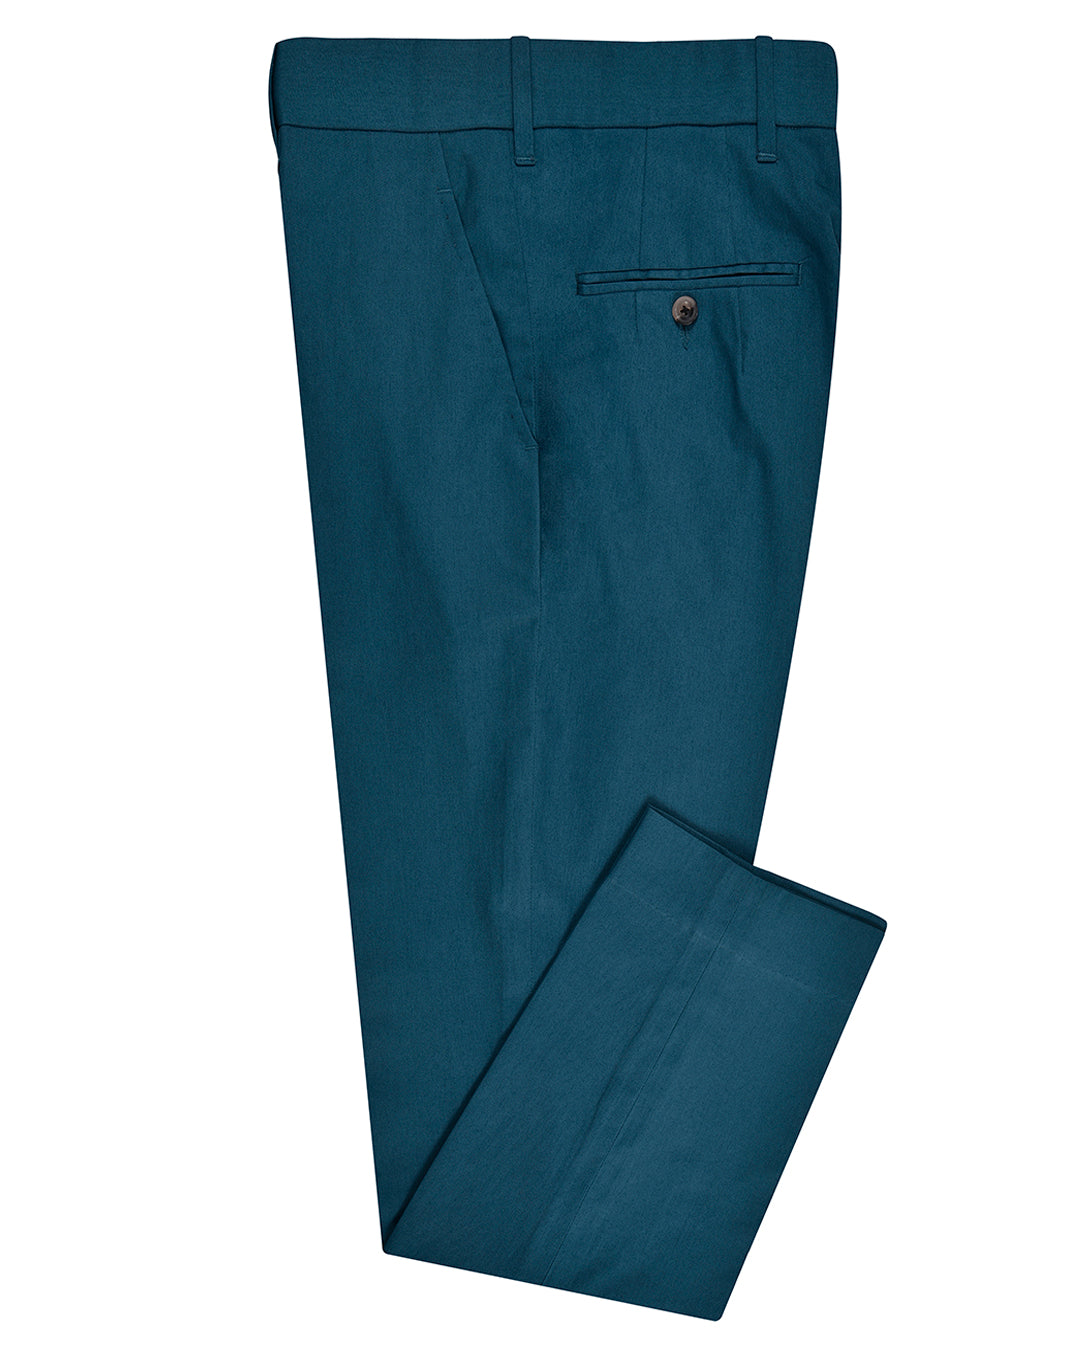 Electric Blue Cotton Pant